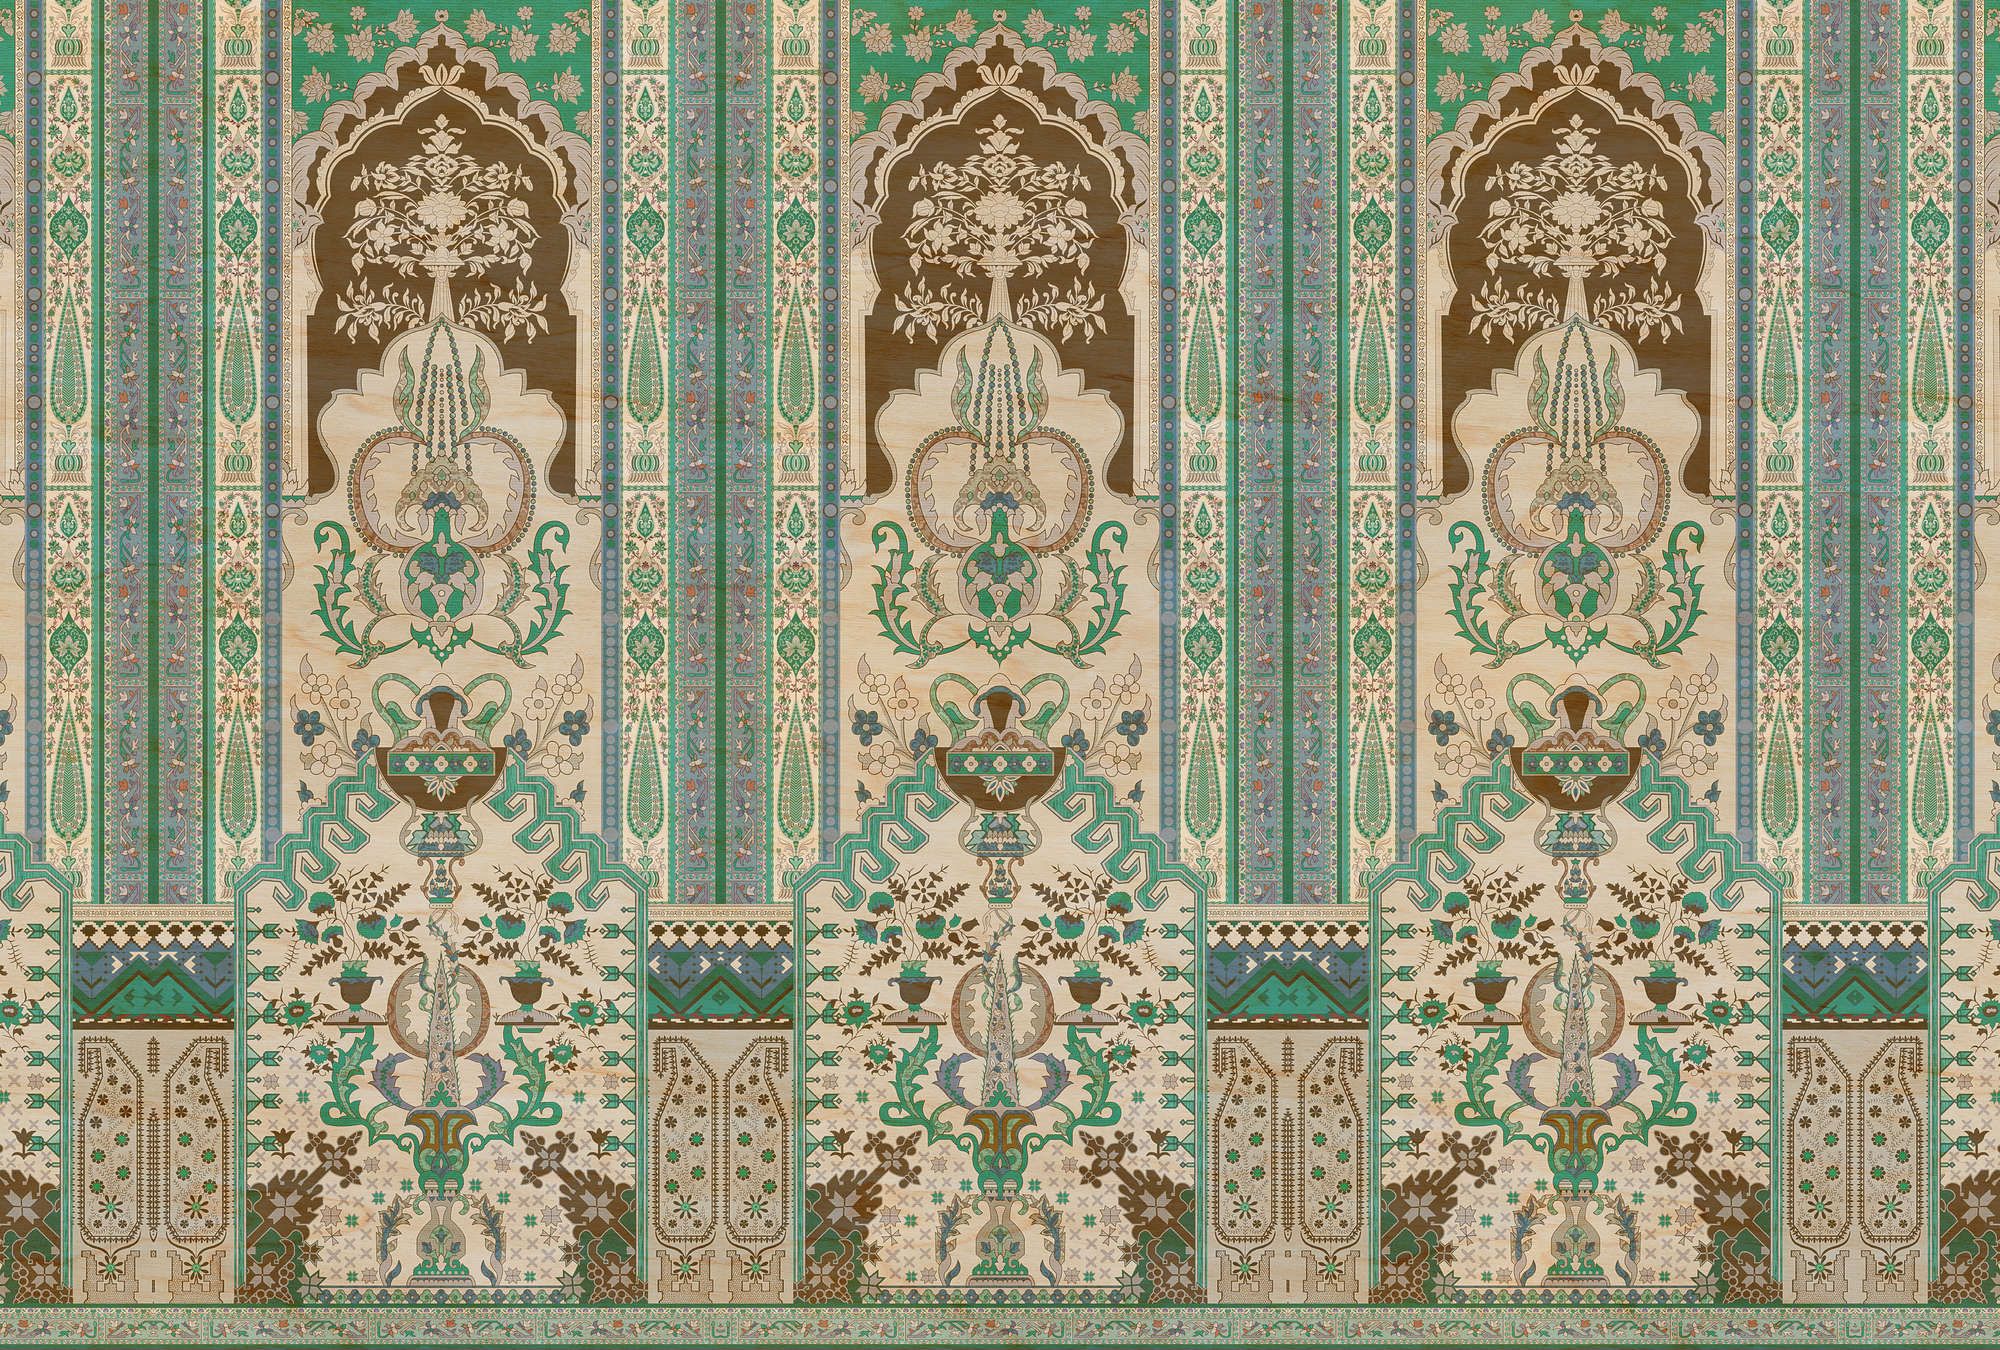             Fotomurali »tara« - Rivestimento ornamentale con texture in compensato - Verde, beige | Materiali non tessuto liscio, leggermente perlato e scintillante
        